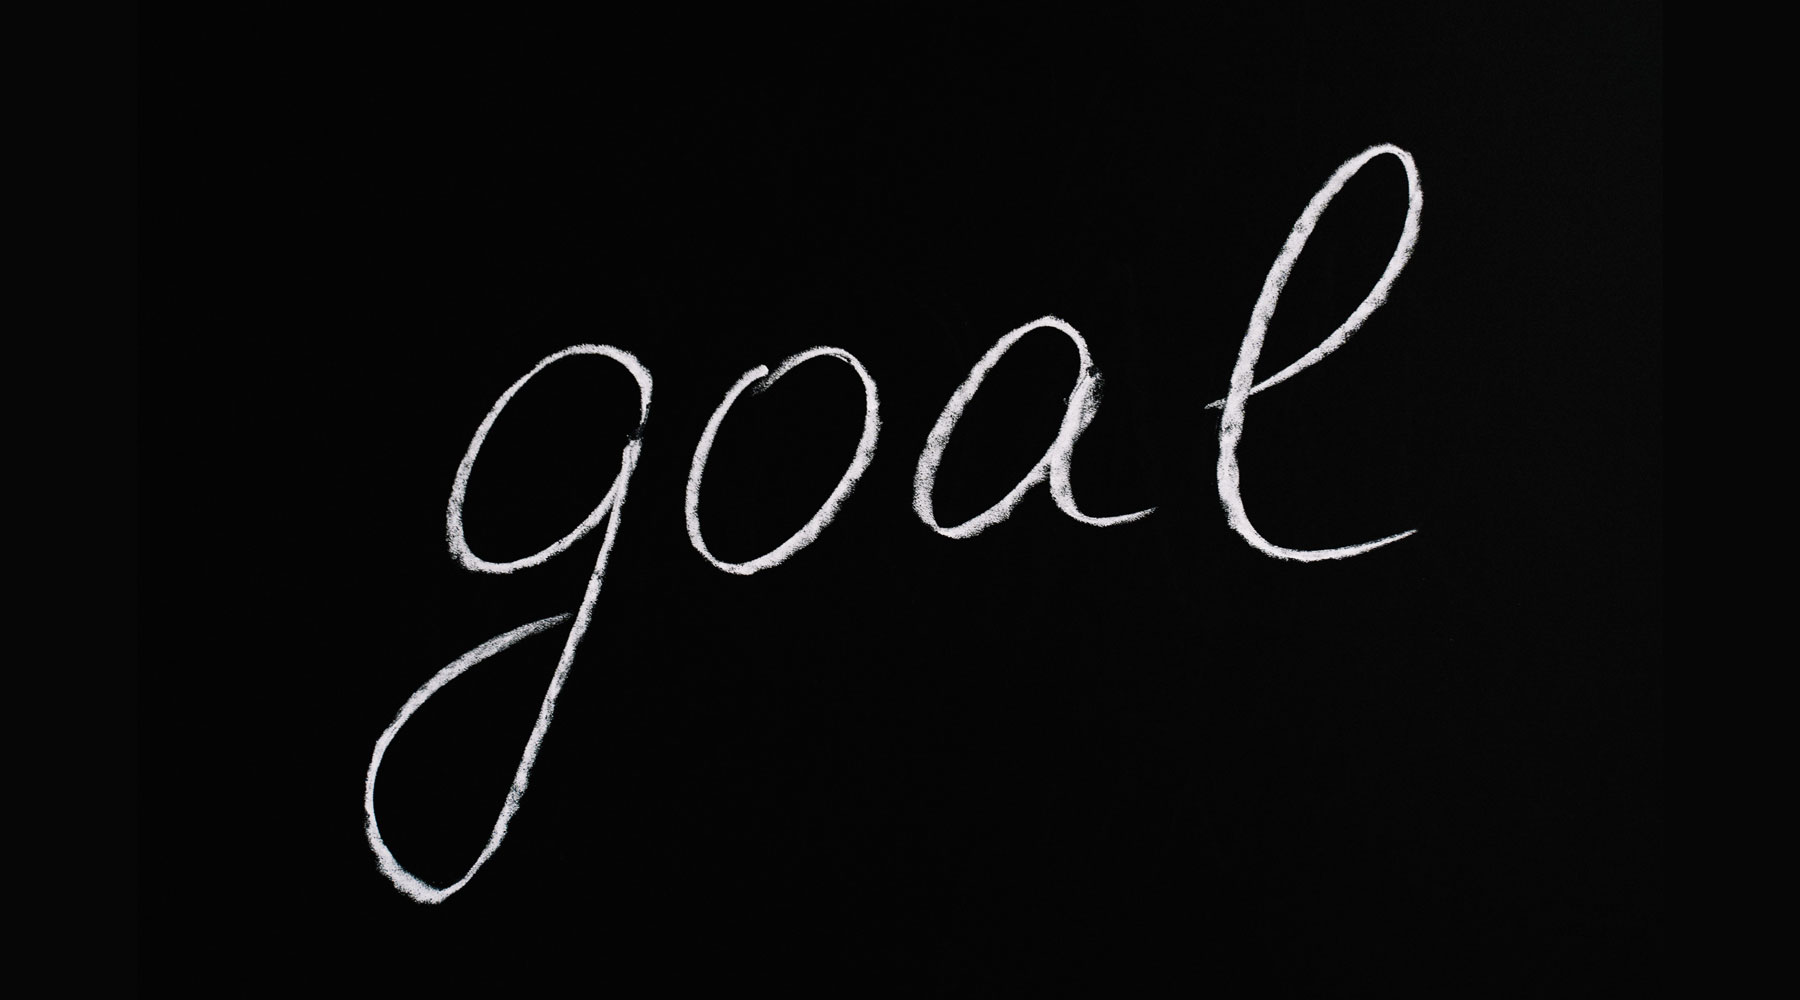 The word 'goal' written in chalk